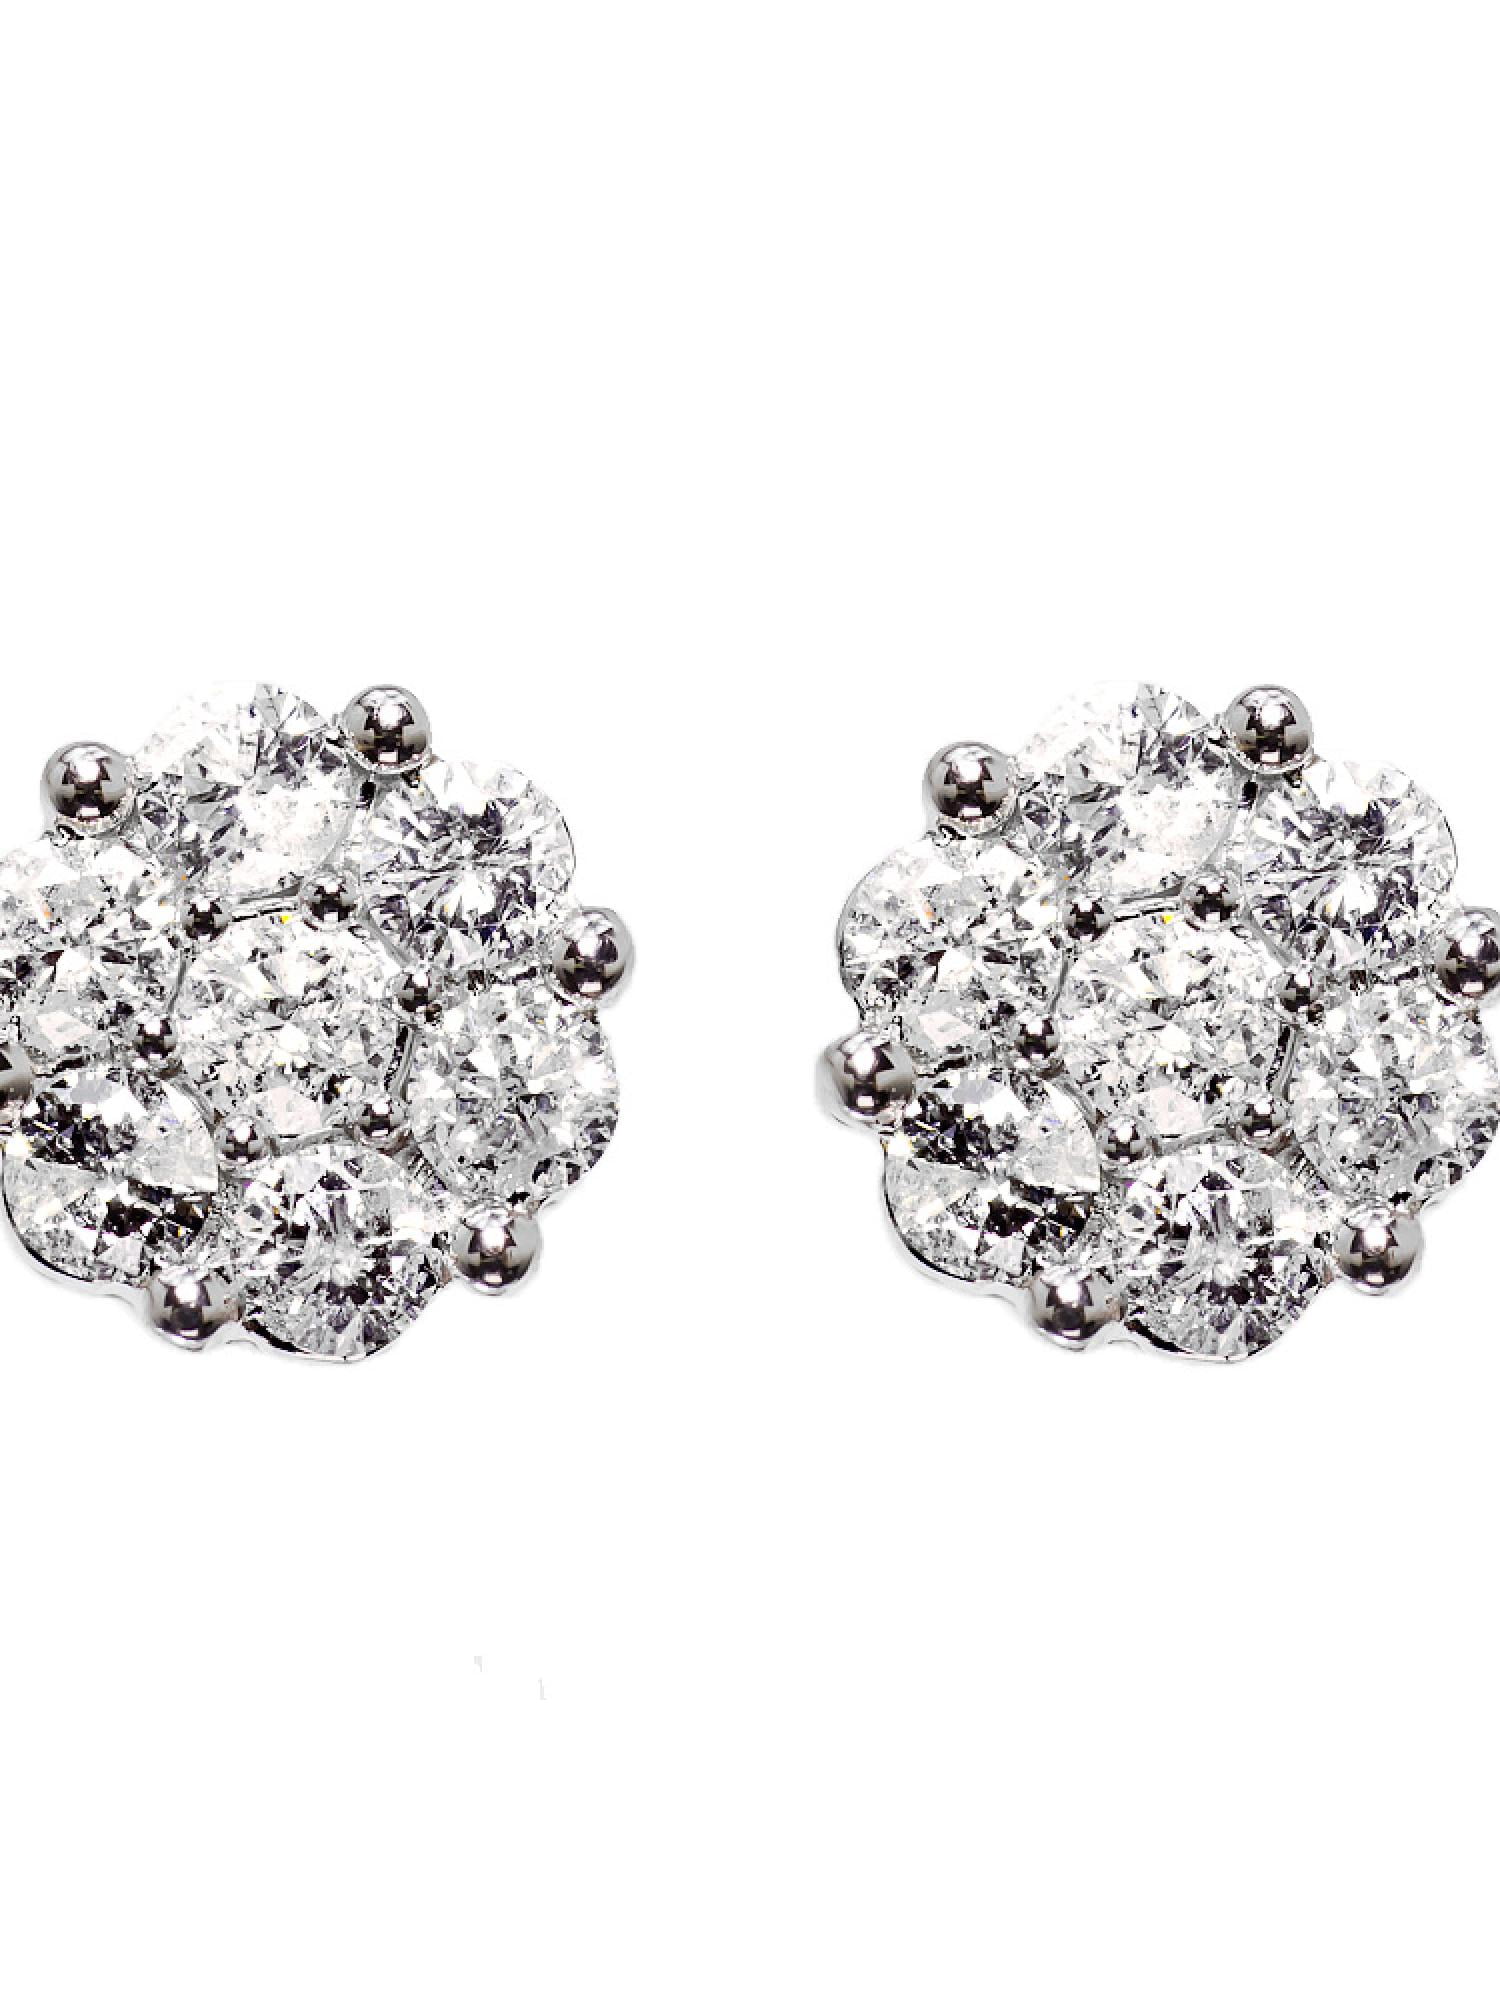 14k White Gold Mens/Ladies Round Diamond Flower Cluster Studs Earrings 8mm